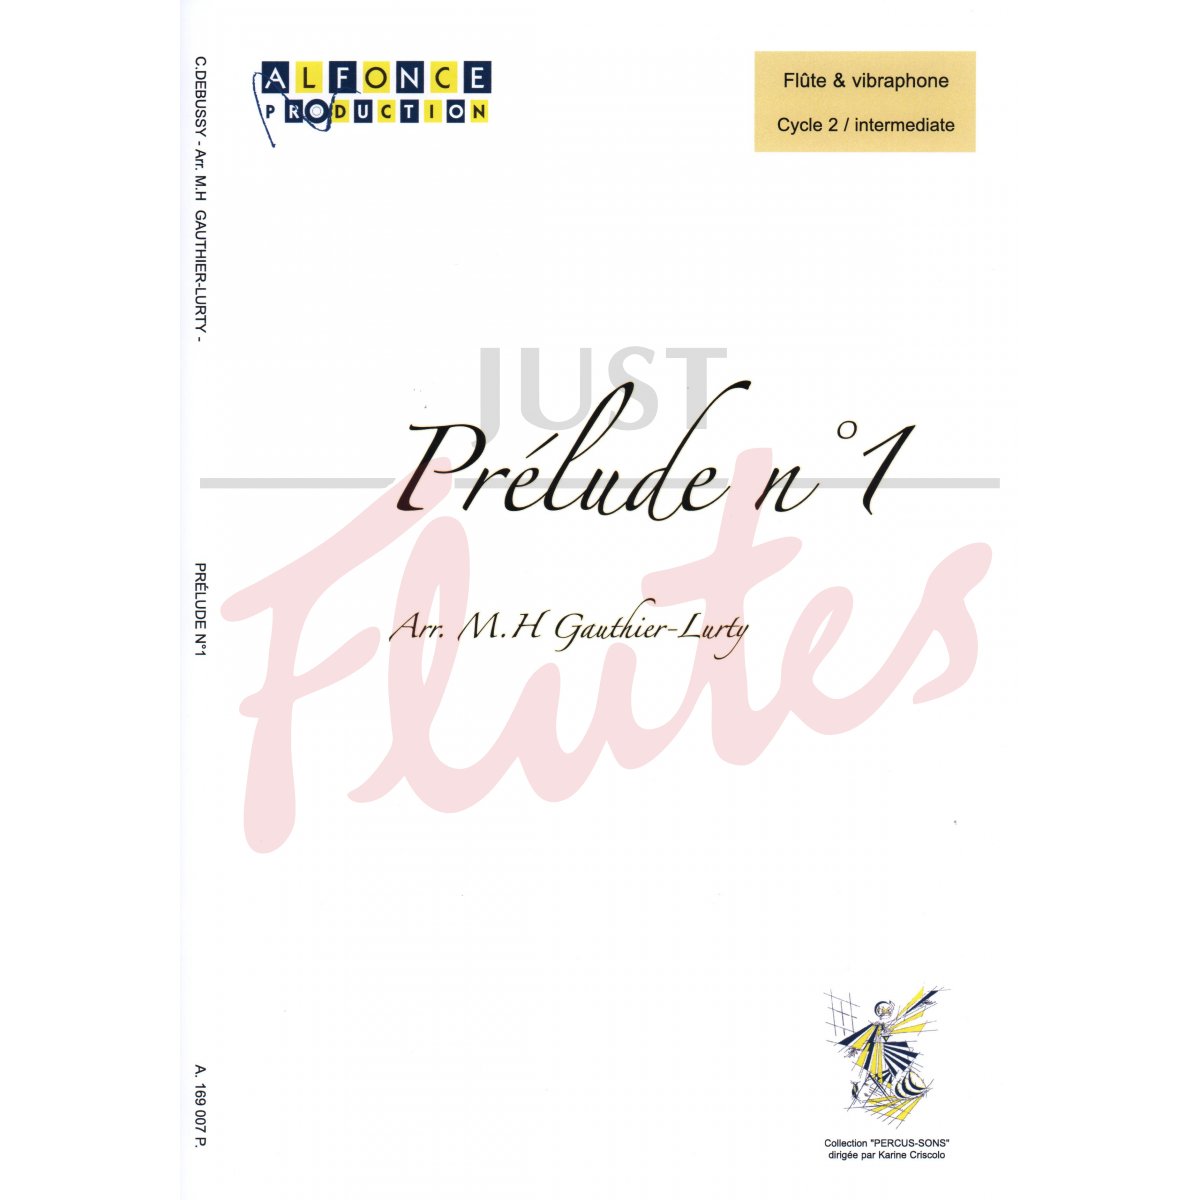 Prélude No 1 [Flute and Vibraphone]